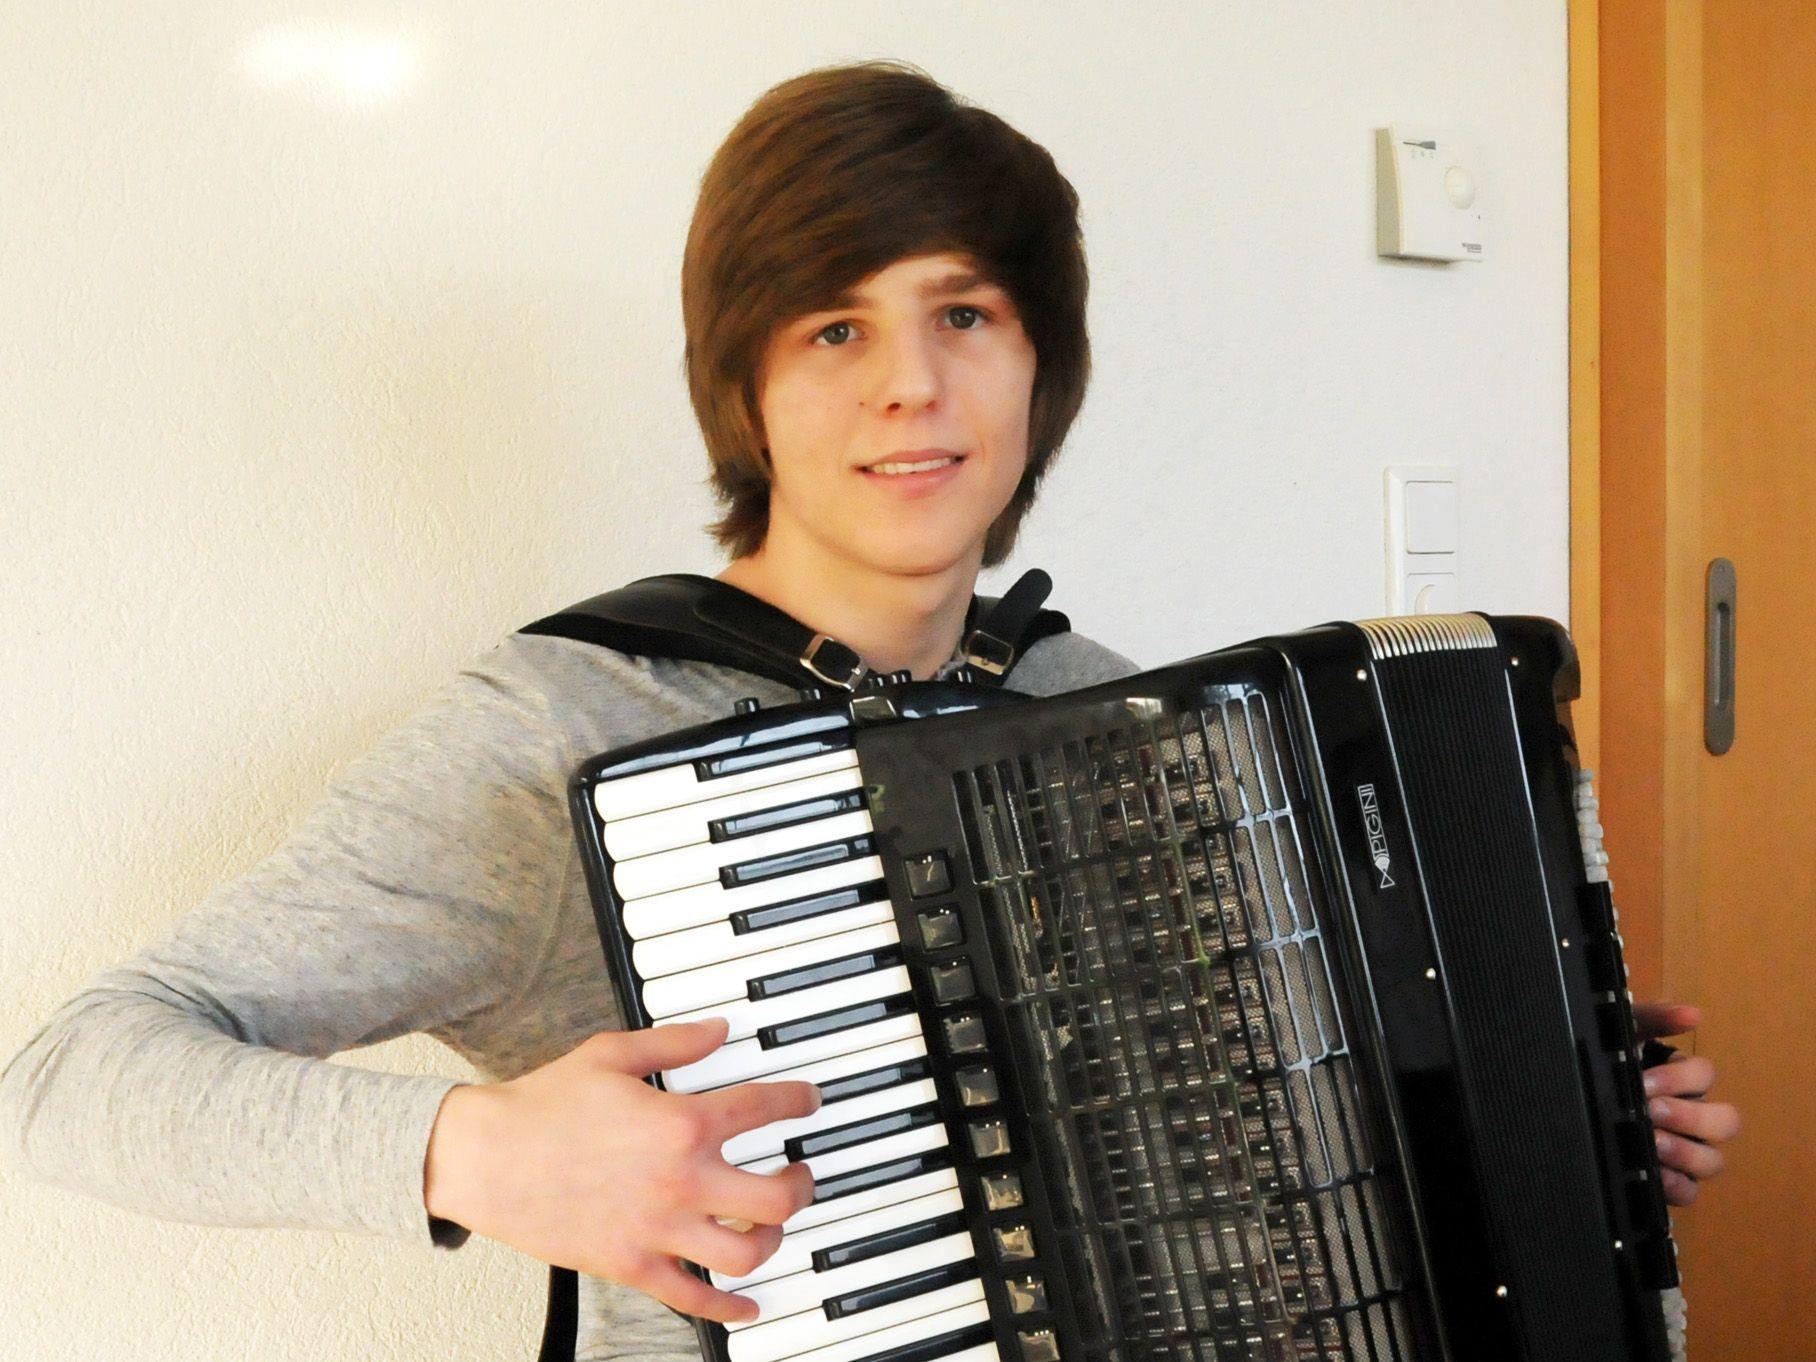 Gymnasium, Konservatorium und täglich 2 bis 3 Stunden üben: Damian Keller (16) aus Fußach